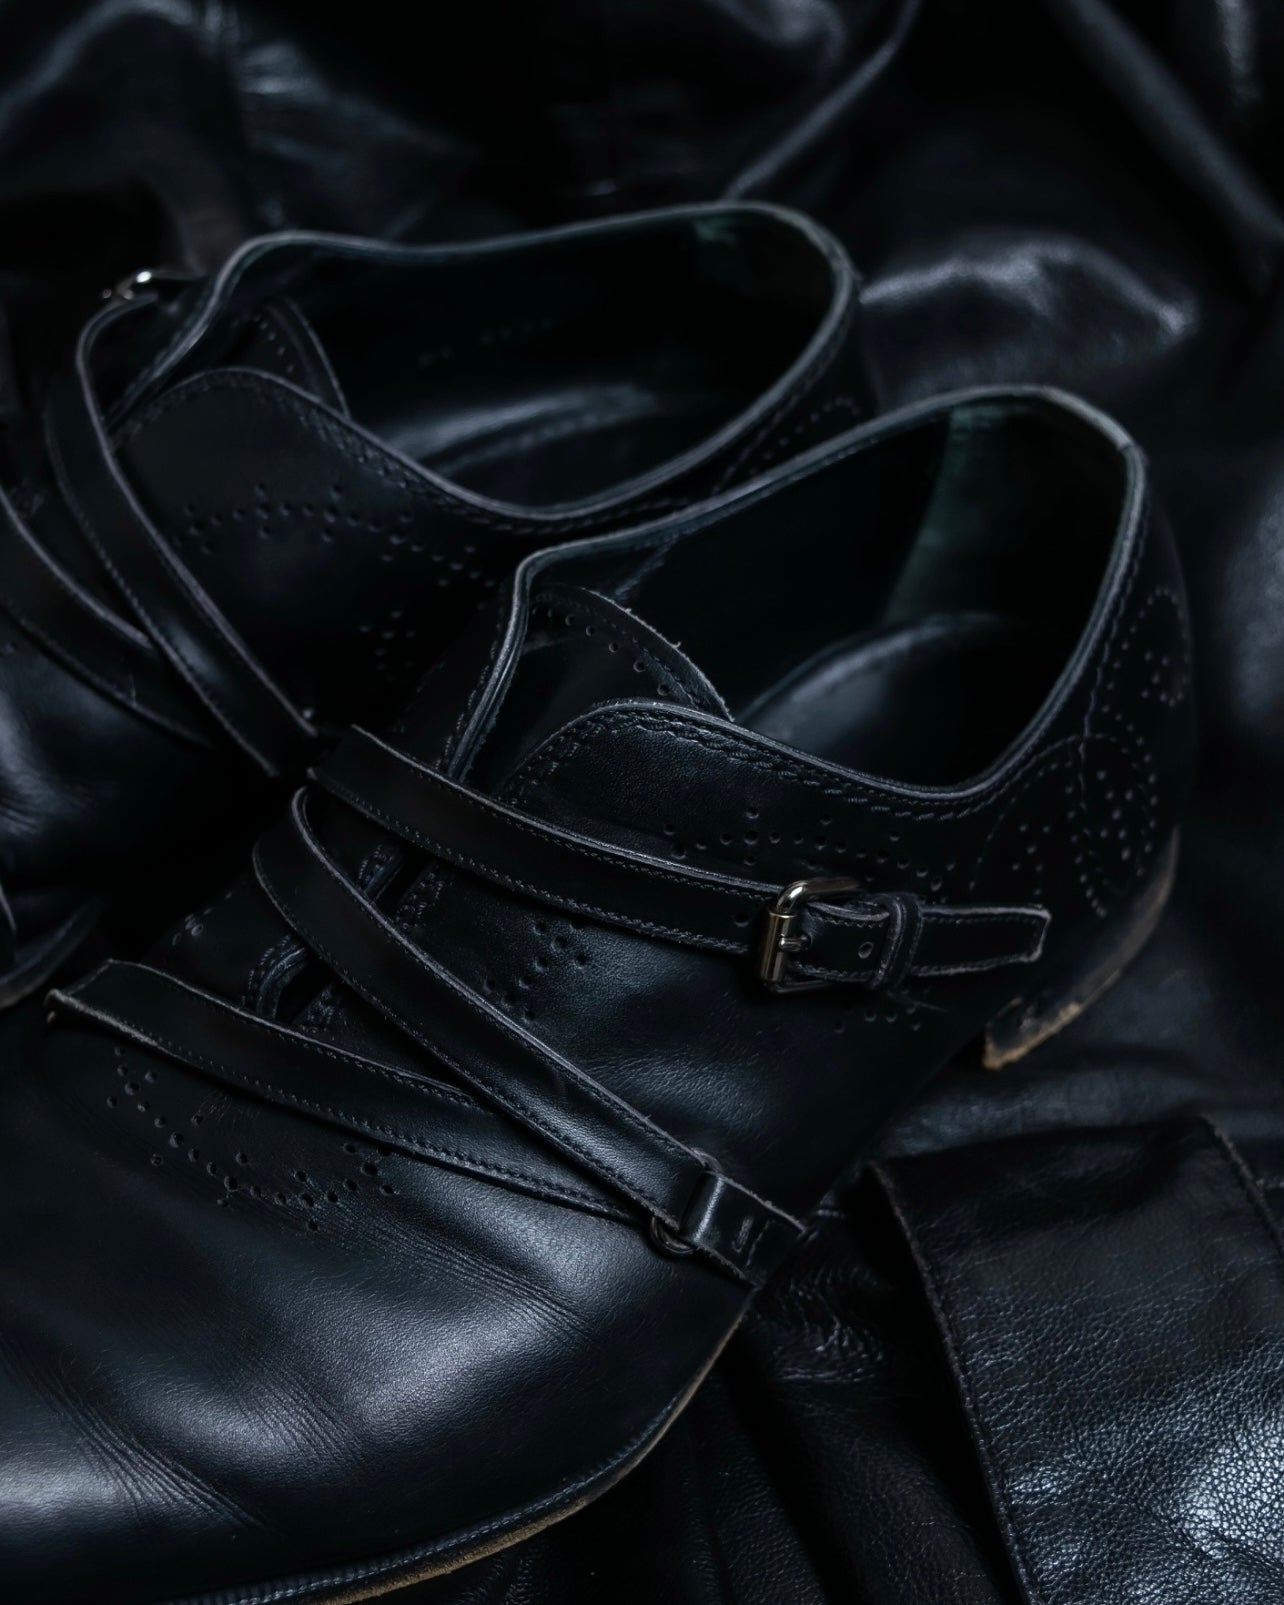 "Louis Vuitton" leather strap dress shoes